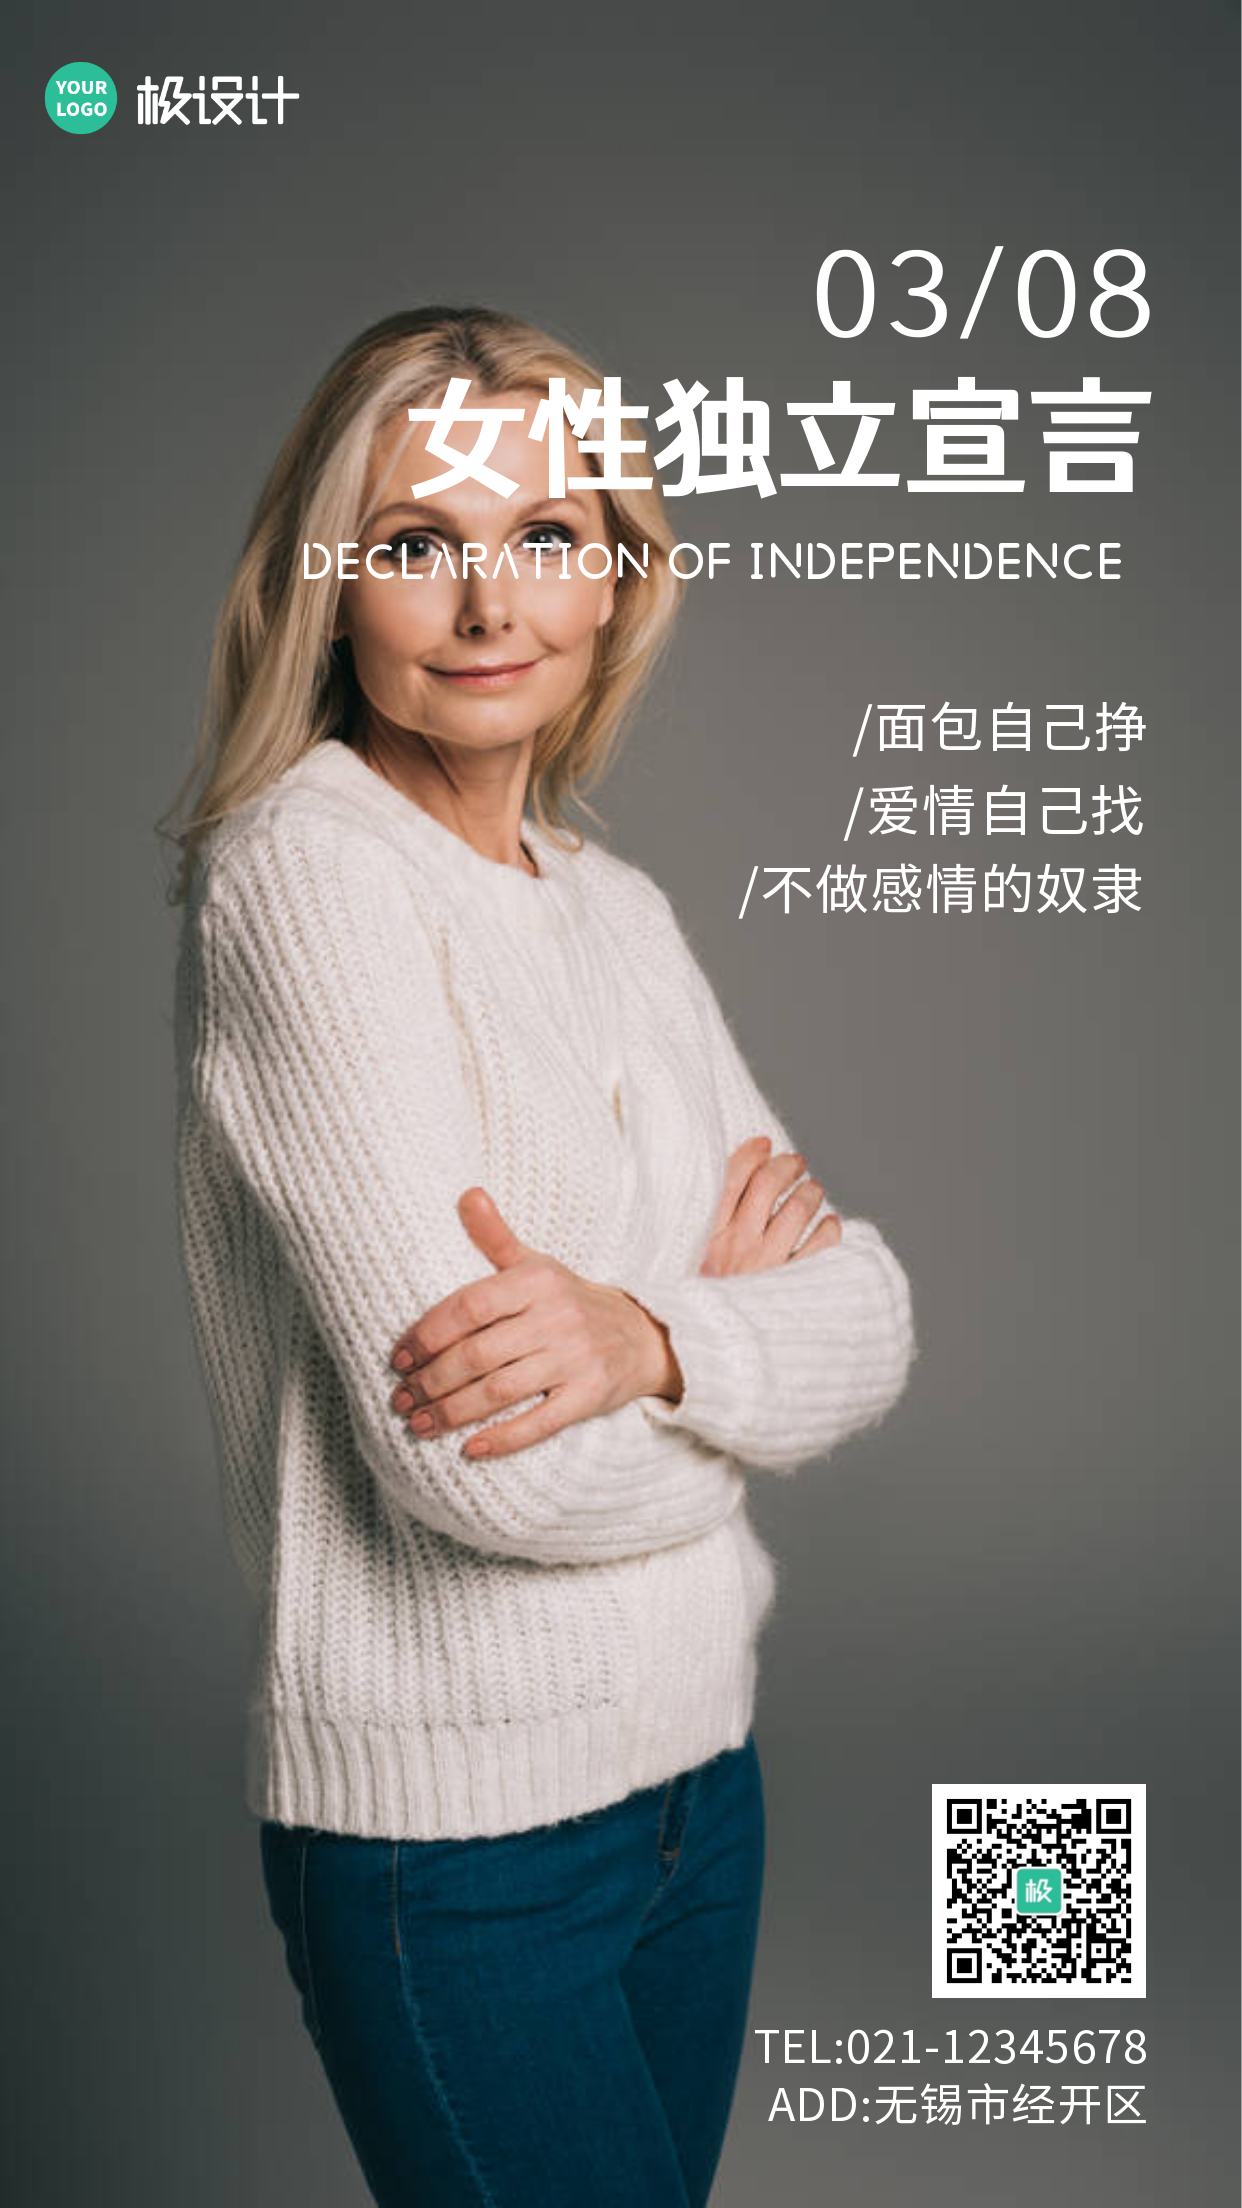 3.8女性独立宣言简约大气手机海报